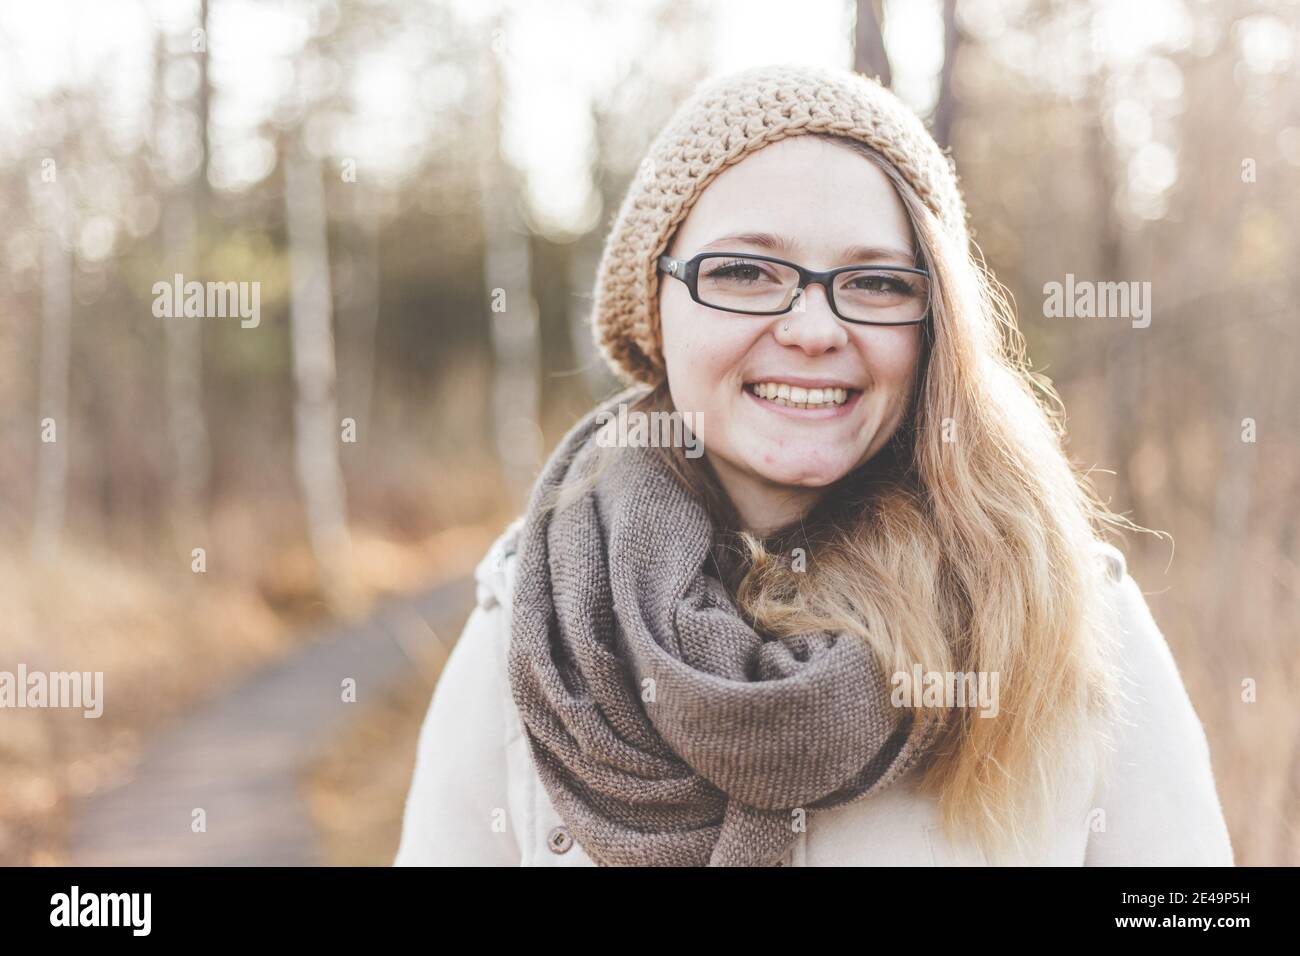 Lächelndes und glückliches Gesicht einer jungen Frau mit Brille im Freien Im Herbst mit Bäumen im Hintergrund Stockfoto